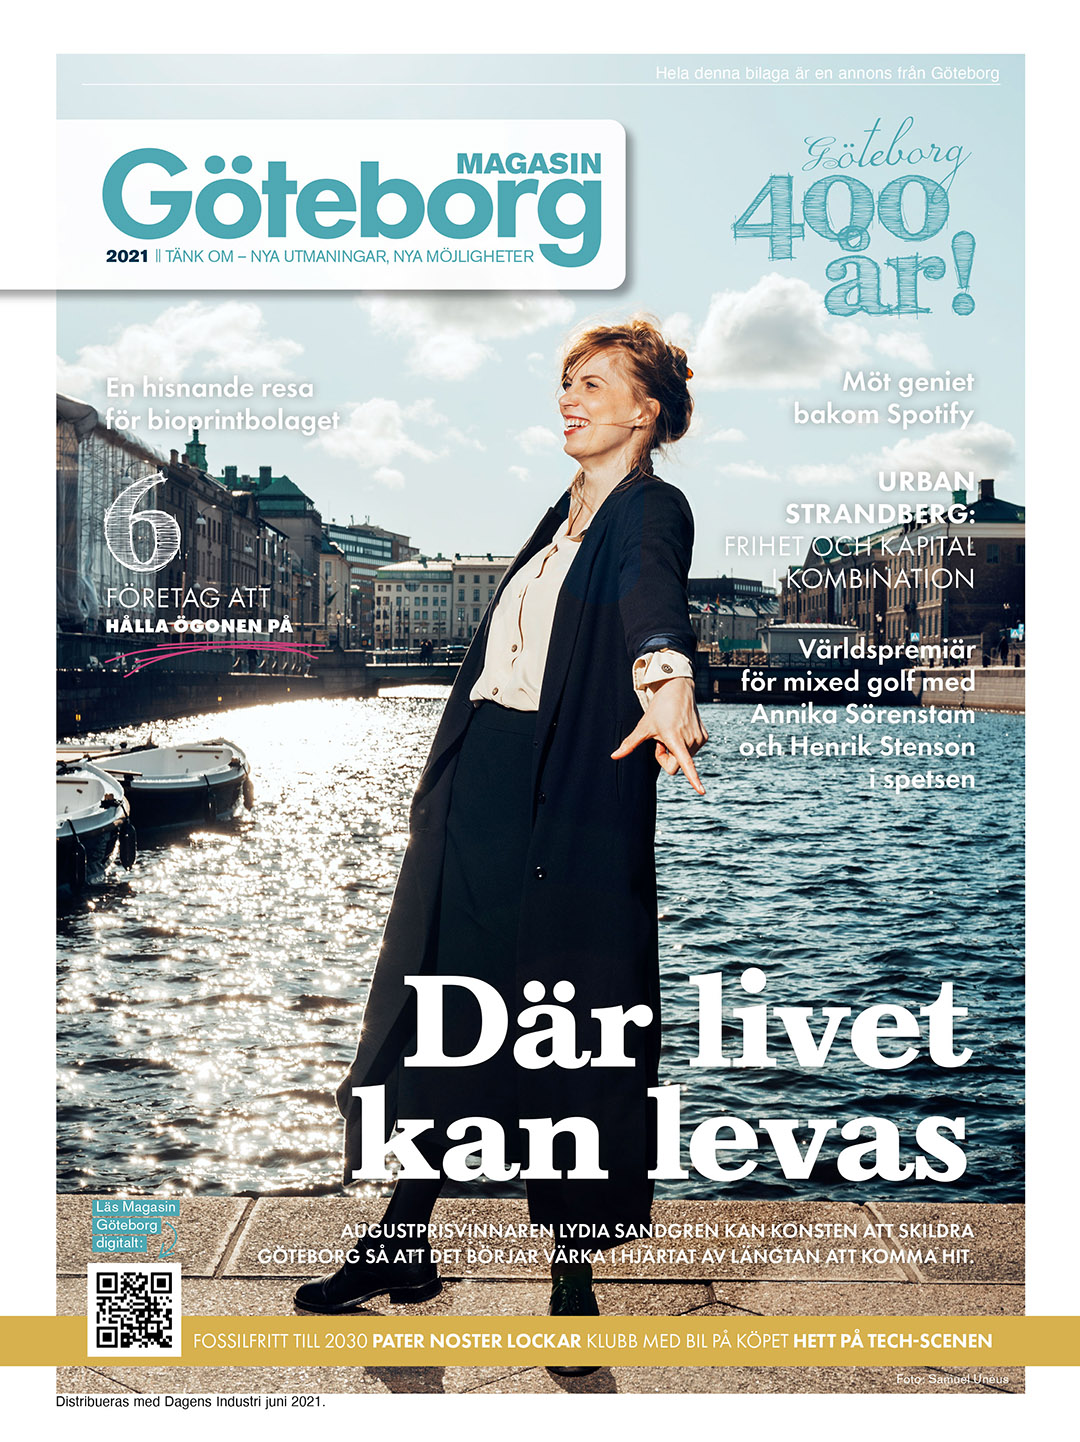 Startbild magasin göteborg med Lydia Sandgren